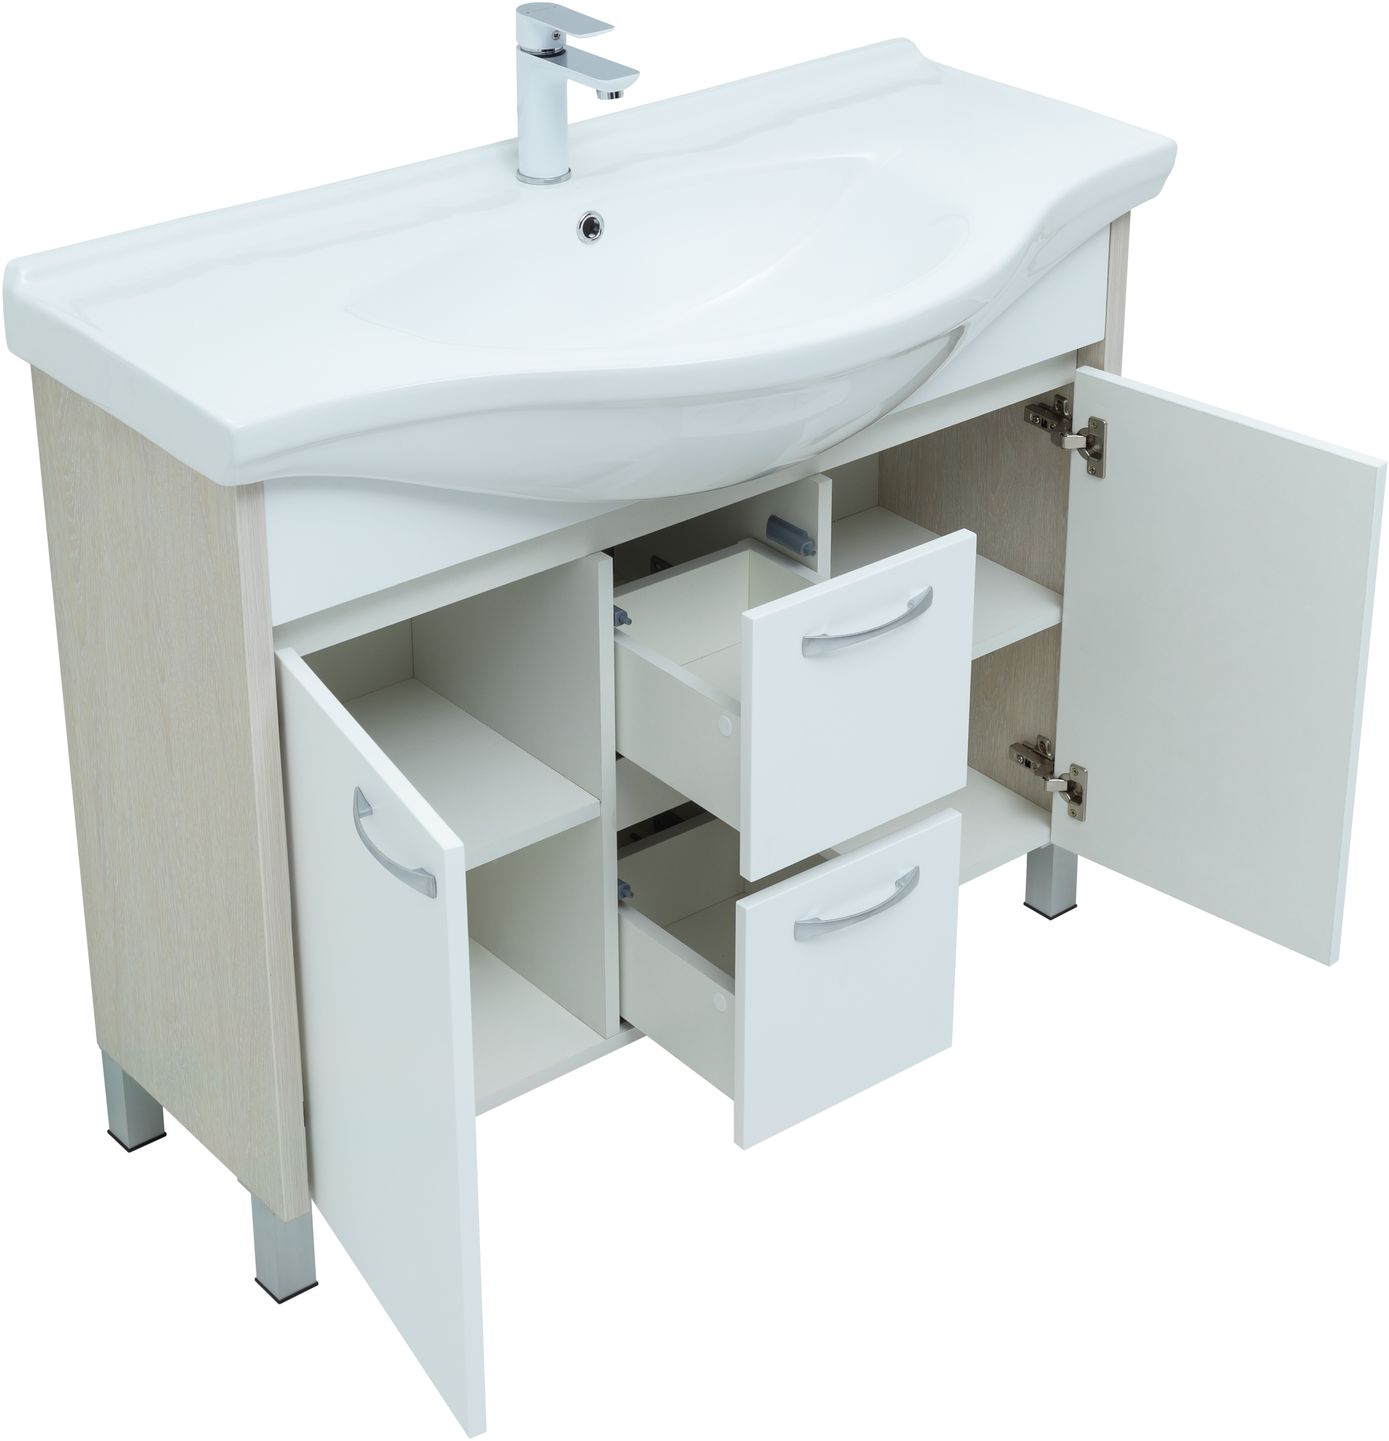 Мебель для ванной Aquanet Донна 102 см напольная 2 ящика и 2 дверцы, дуб, белый, цвет хром 274164 - фото 5